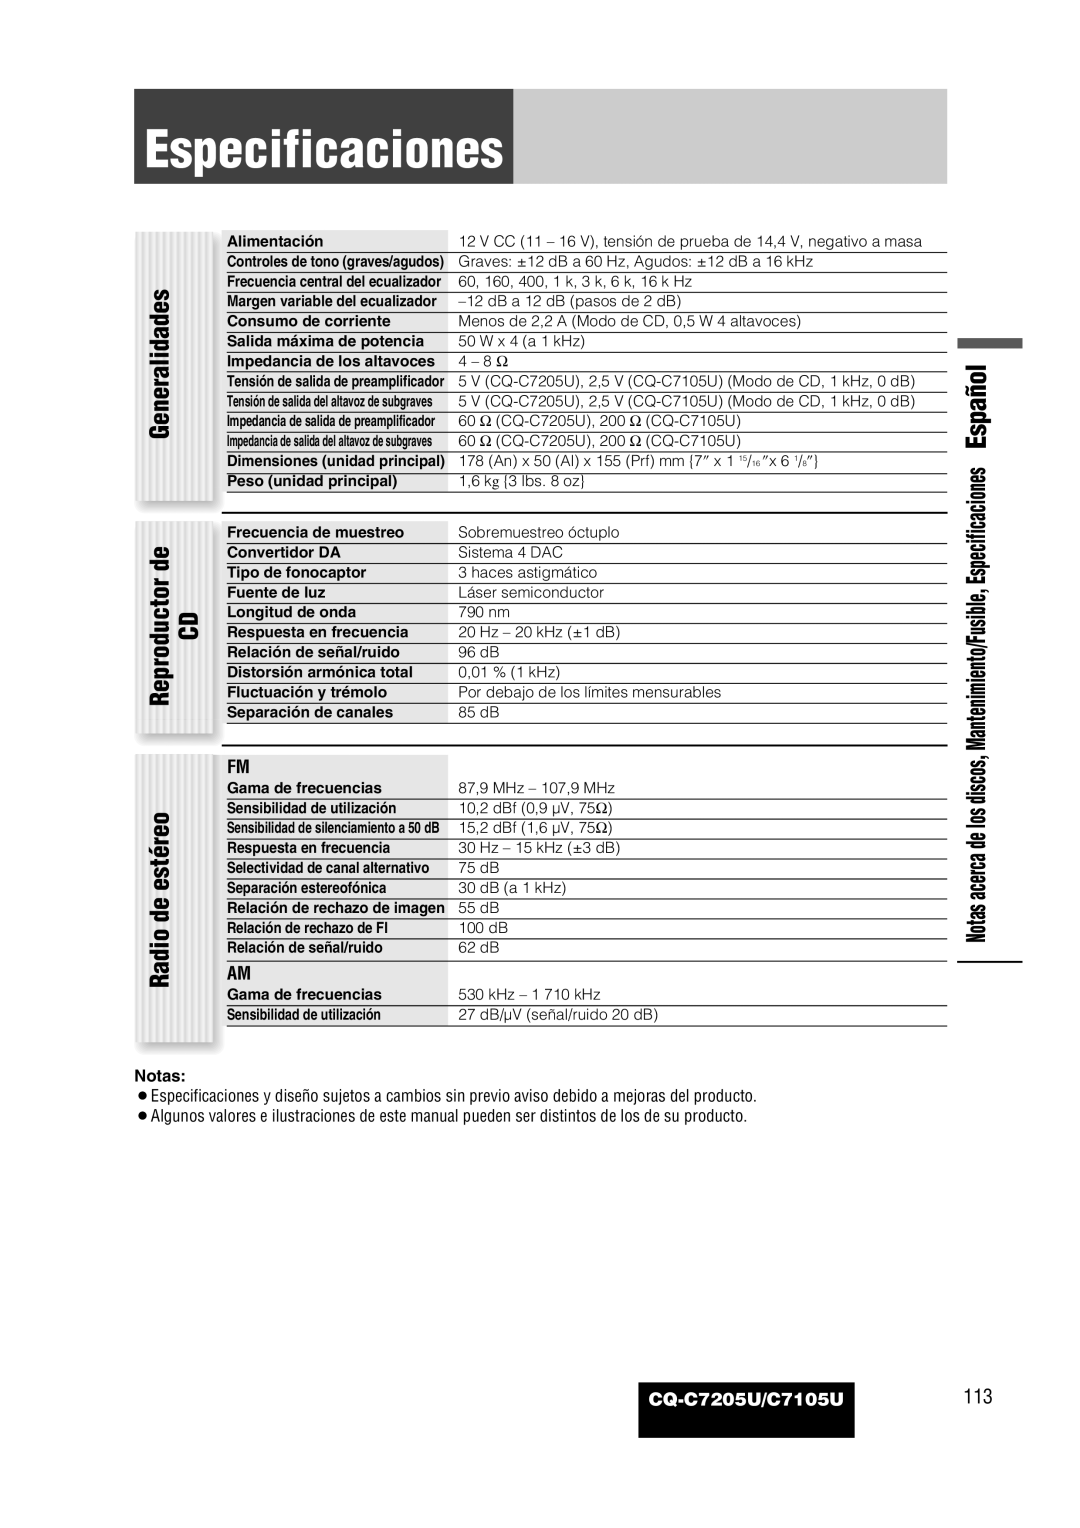 Panasonic warranty Especificaciones, CQ-C7205U/C7105U113 